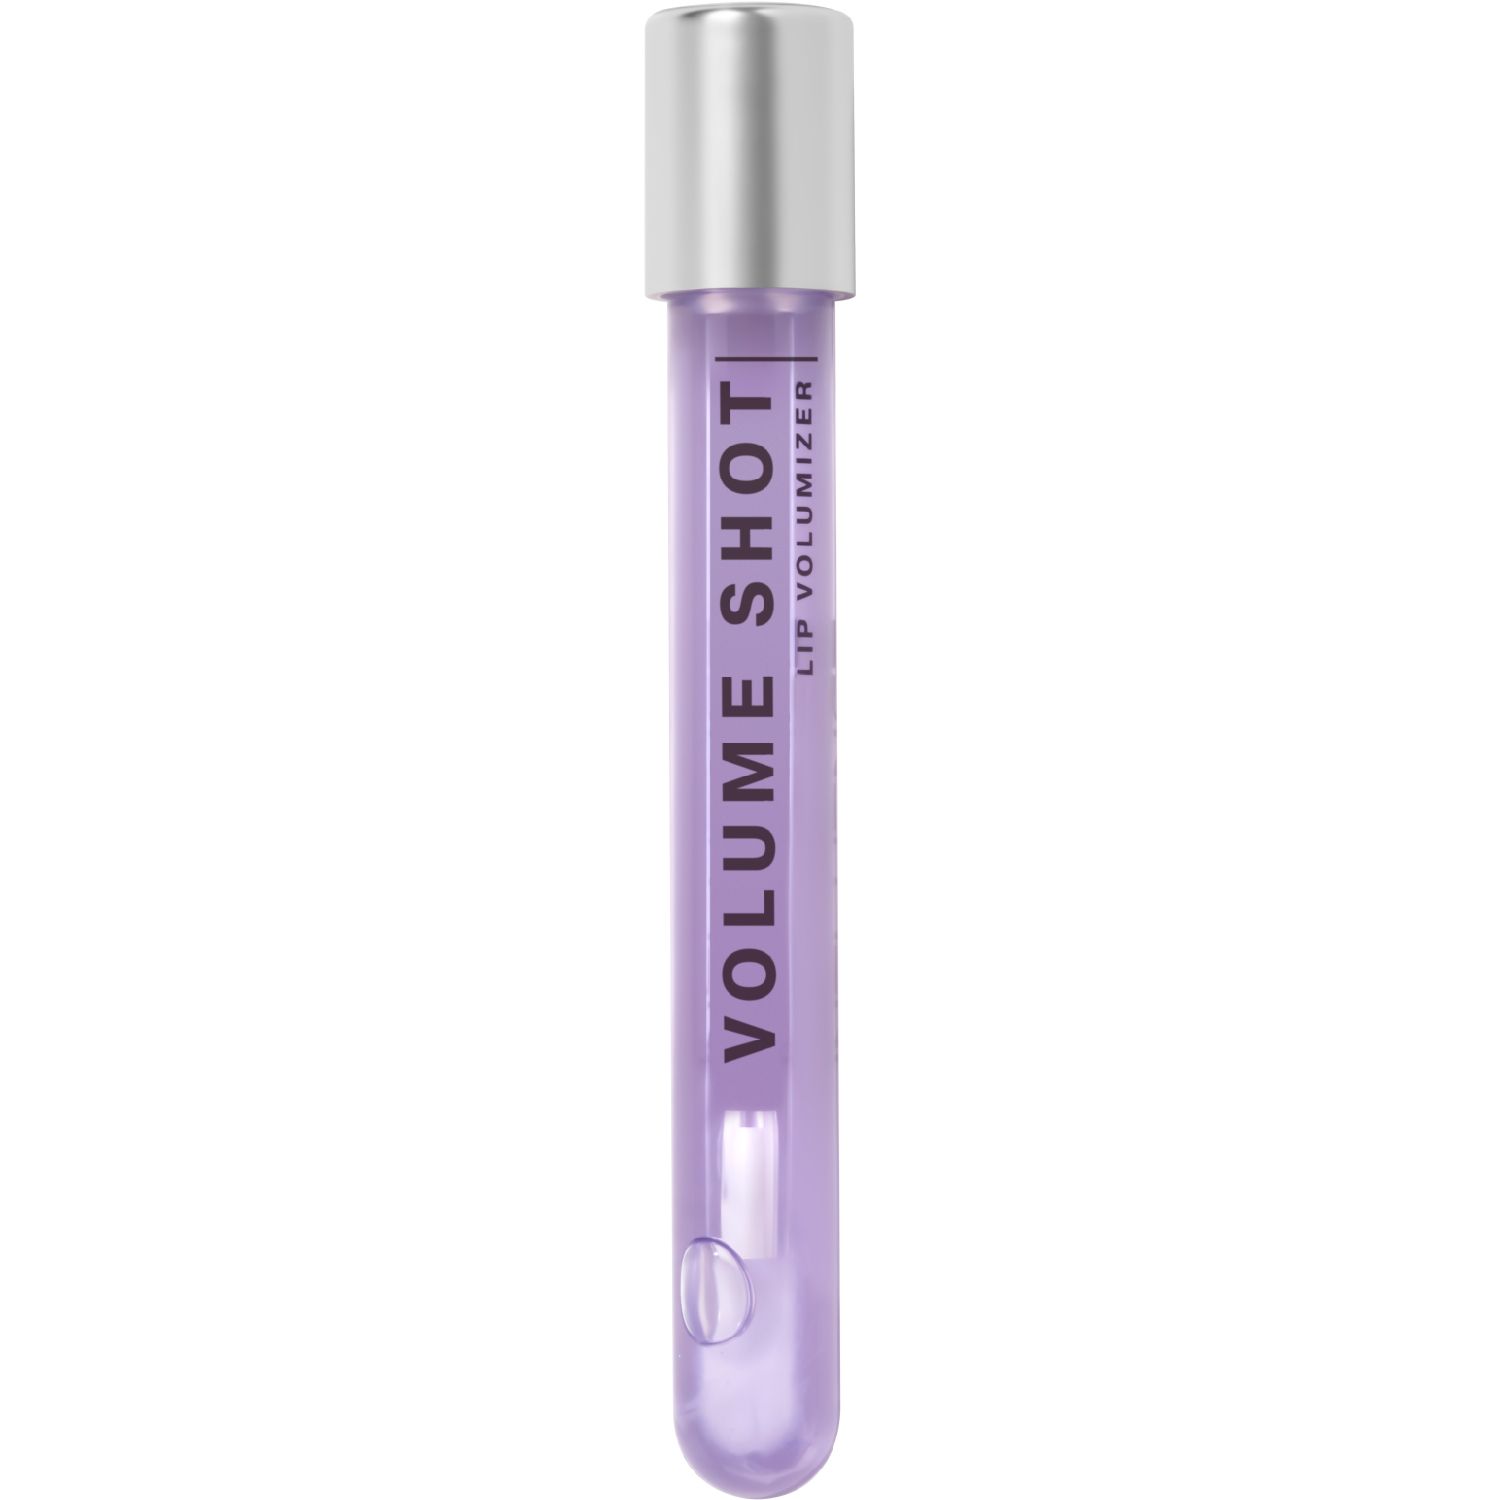 Блеск для губ Influence Beauty Volume Shot увлажняющий, 01 полупрозрачный фиолетовый, 6 мл гребень фиолетовый dewal beauty